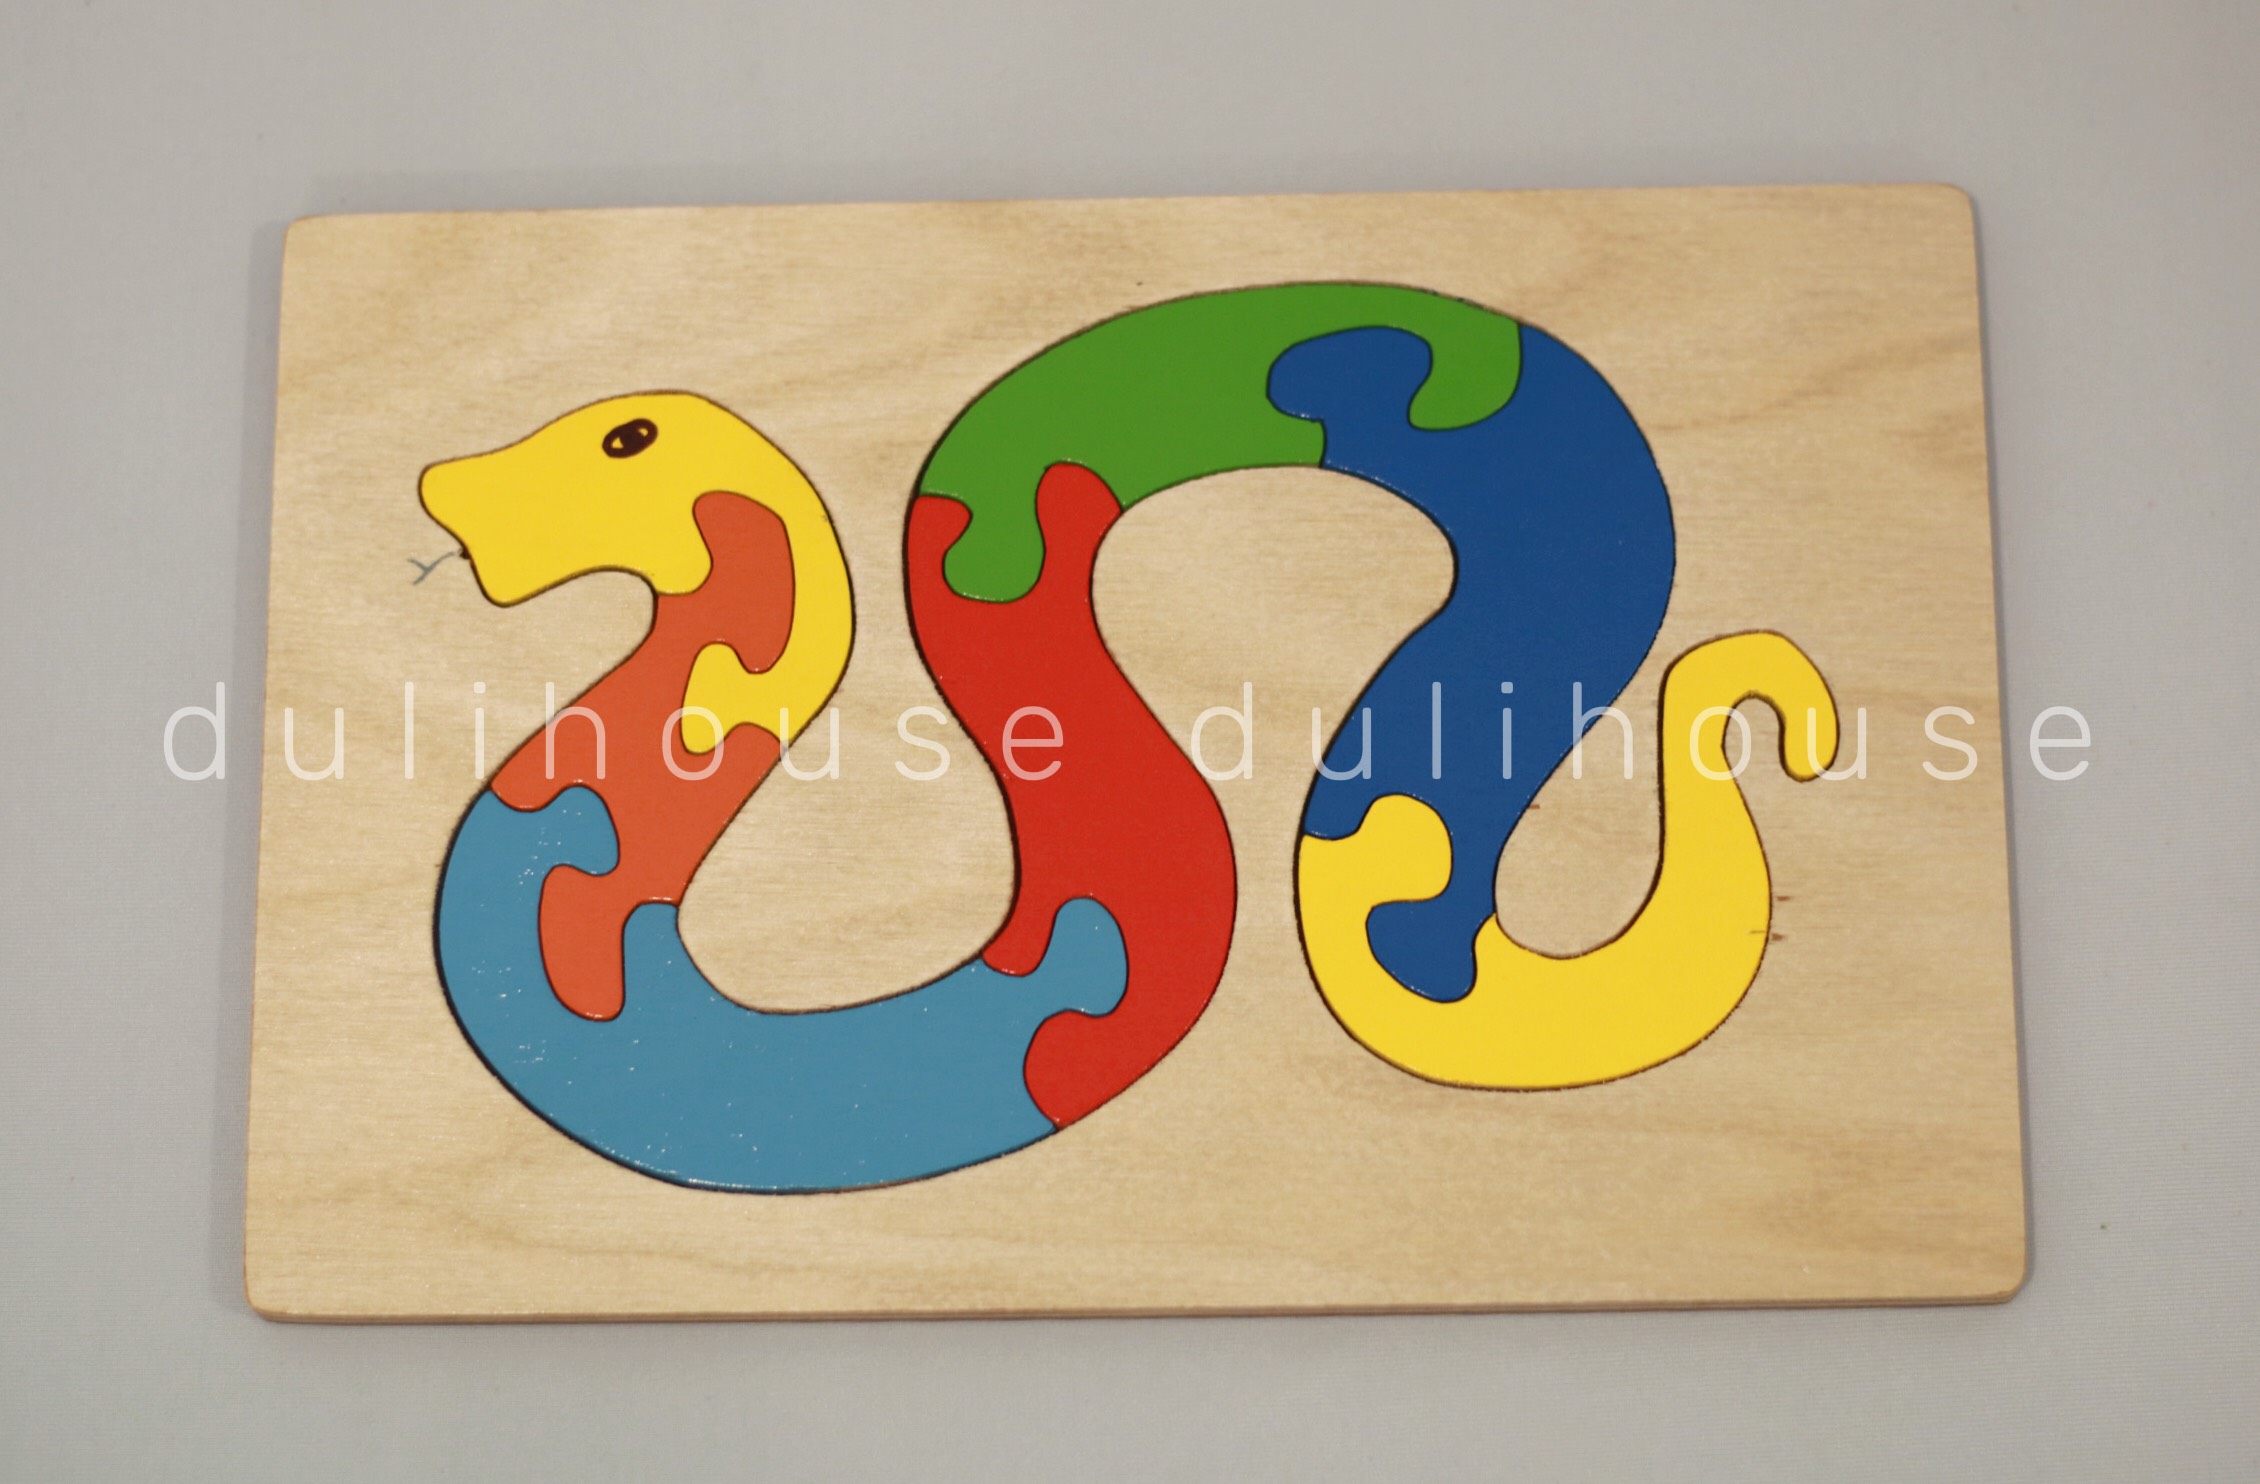 Đồ chơi gỗ cao cấp Tranh ghép hình con rắn - Hỗ trợ bé nhận biết màu sắc, phát triển tư duy logic, khám phá thế giới động vật, sản xuất tại Việt Nam